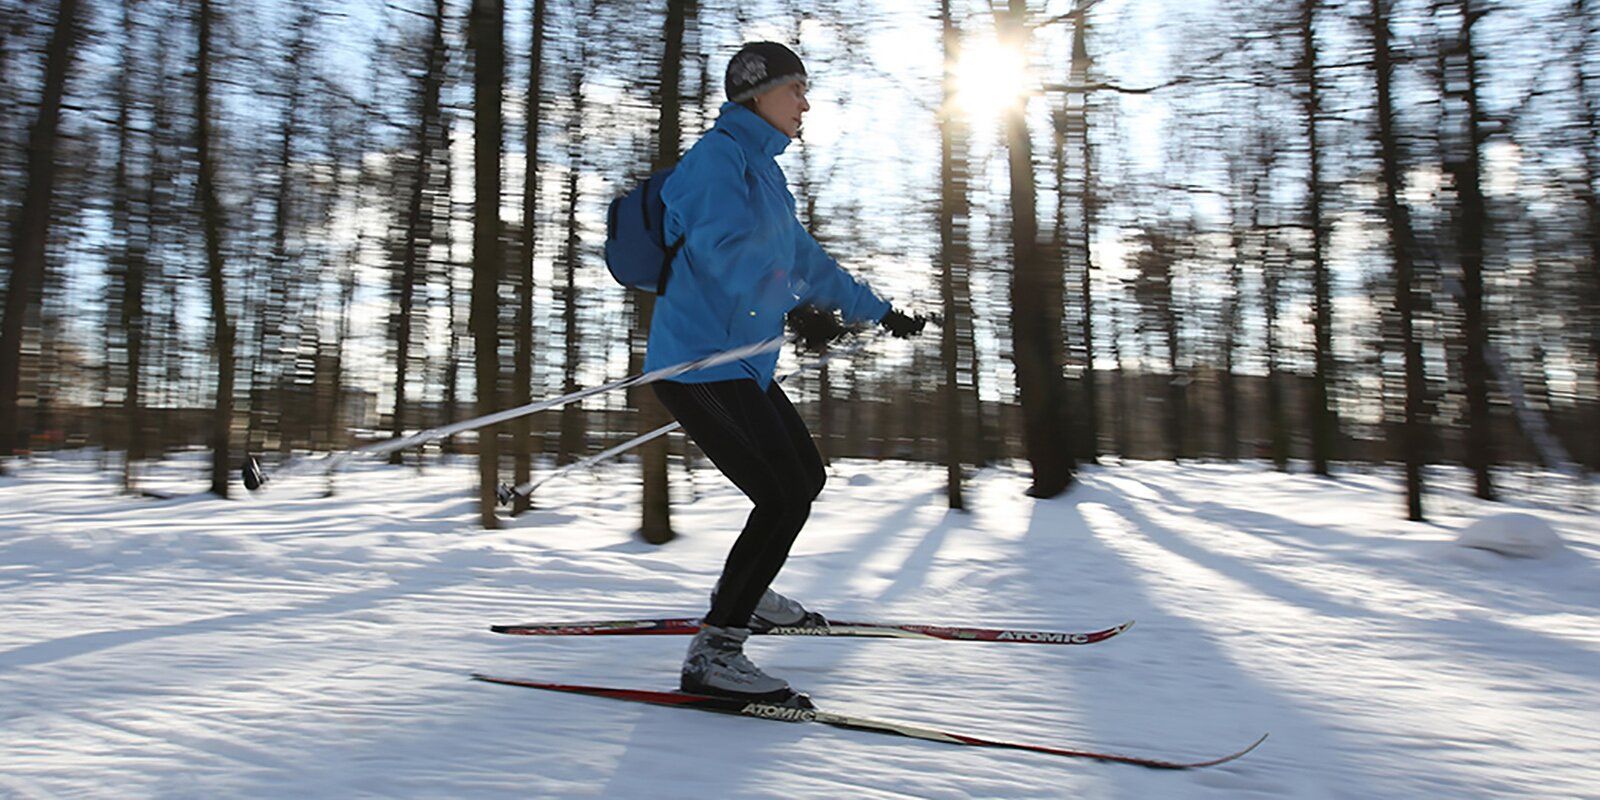 Зимний спорт для новичка: как впервые встать на коньки или лыжи и не получить травму